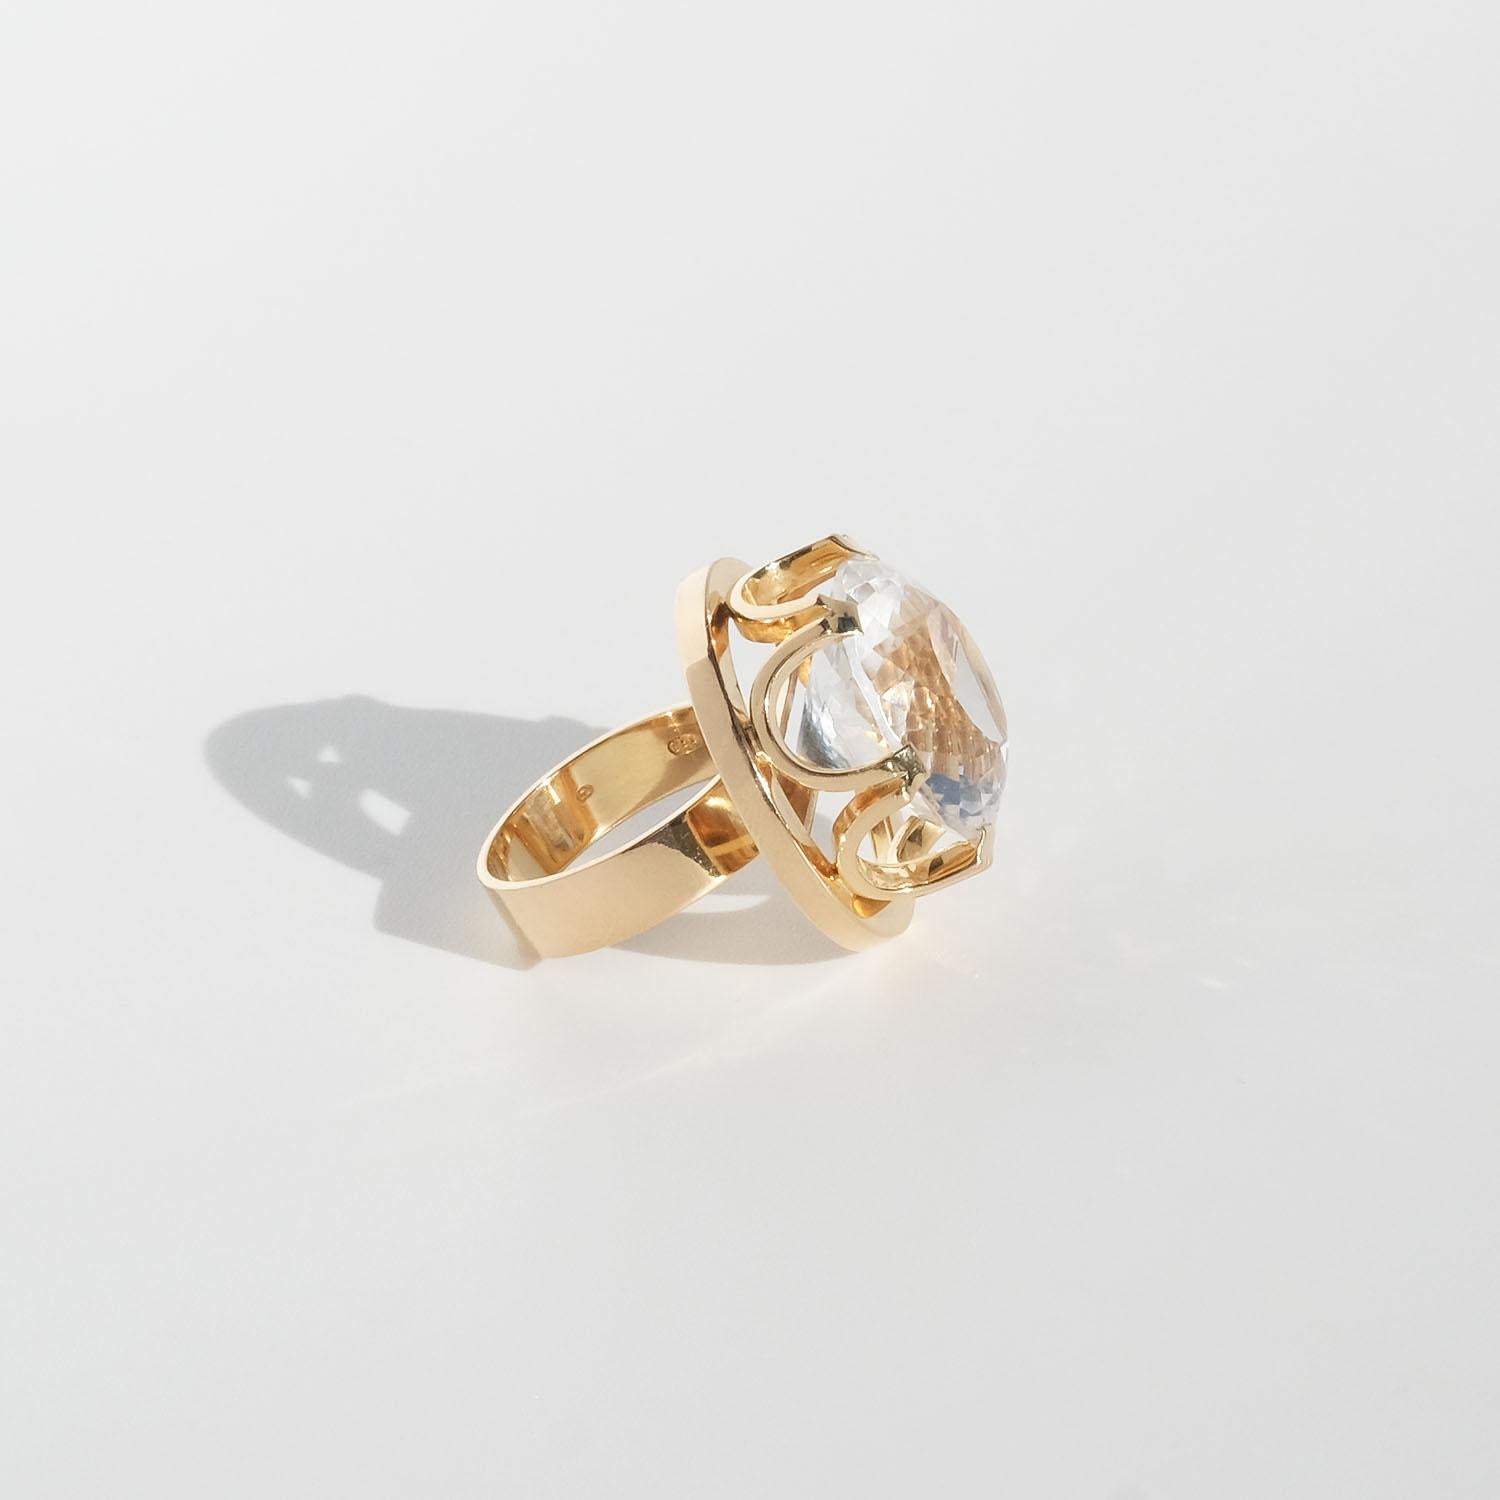 Dieser Ring aus 18 Karat Gold wird von einem großen, facettierten Bergkristall geschmückt. Der Kopf des Steins ist deutlich ausgeprägt und wird von einer markanten Fassung gehalten, die einer Königskrone ähnelt. 

Der Ring ist perfekt für die